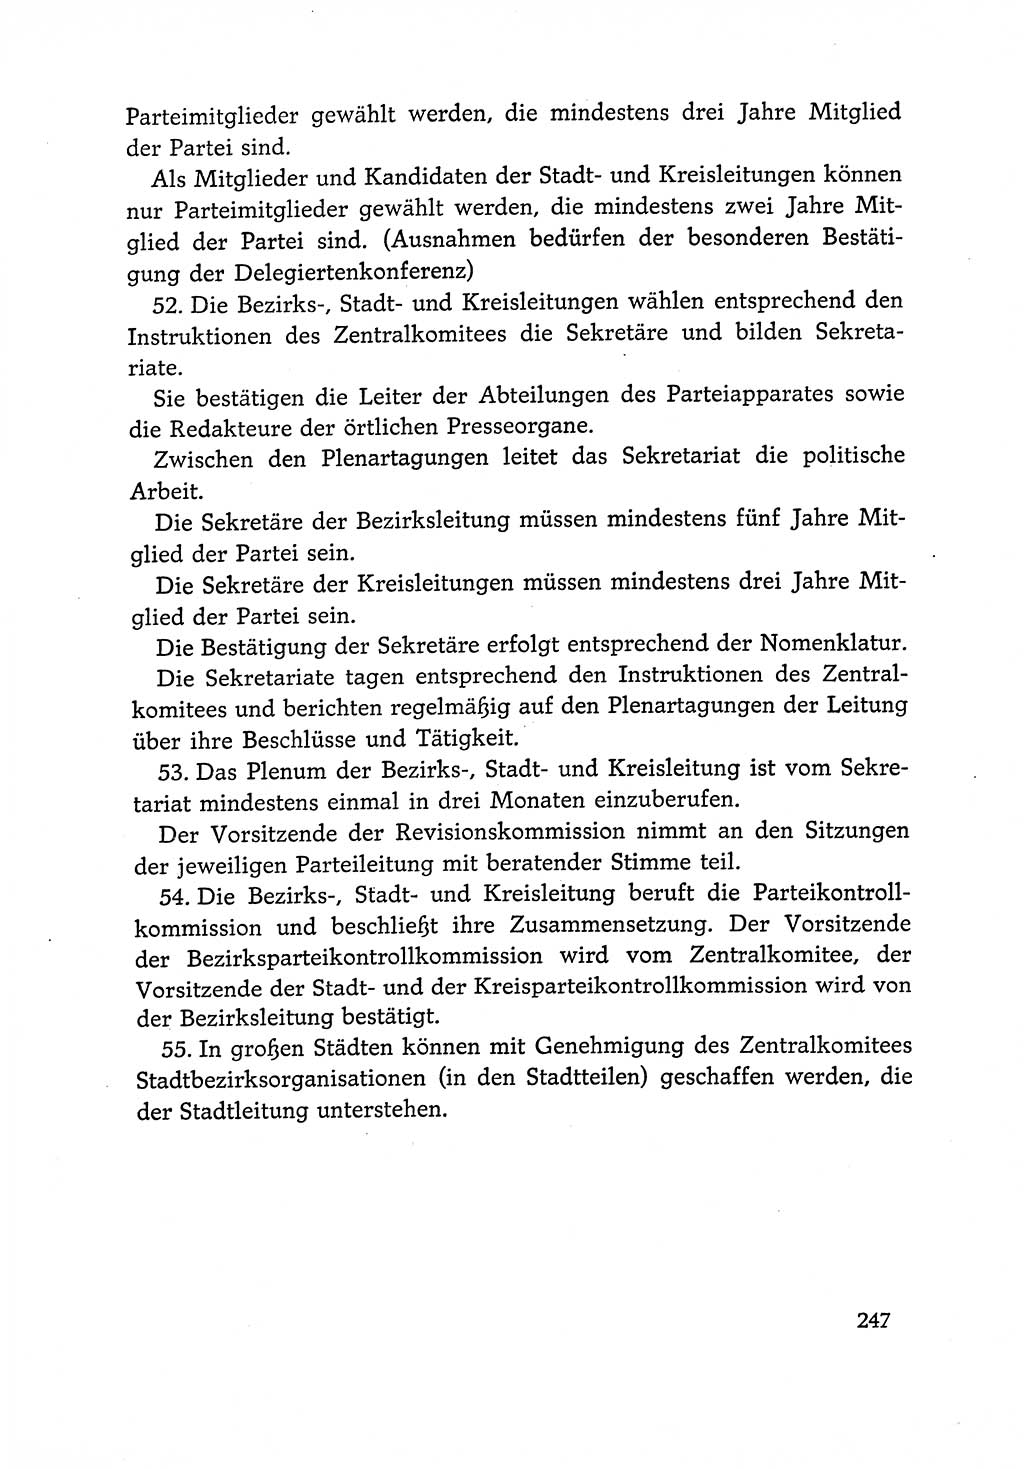 Dokumente der Sozialistischen Einheitspartei Deutschlands (SED) [Deutsche Demokratische Republik (DDR)] 1966-1967, Seite 247 (Dok. SED DDR 1966-1967, S. 247)